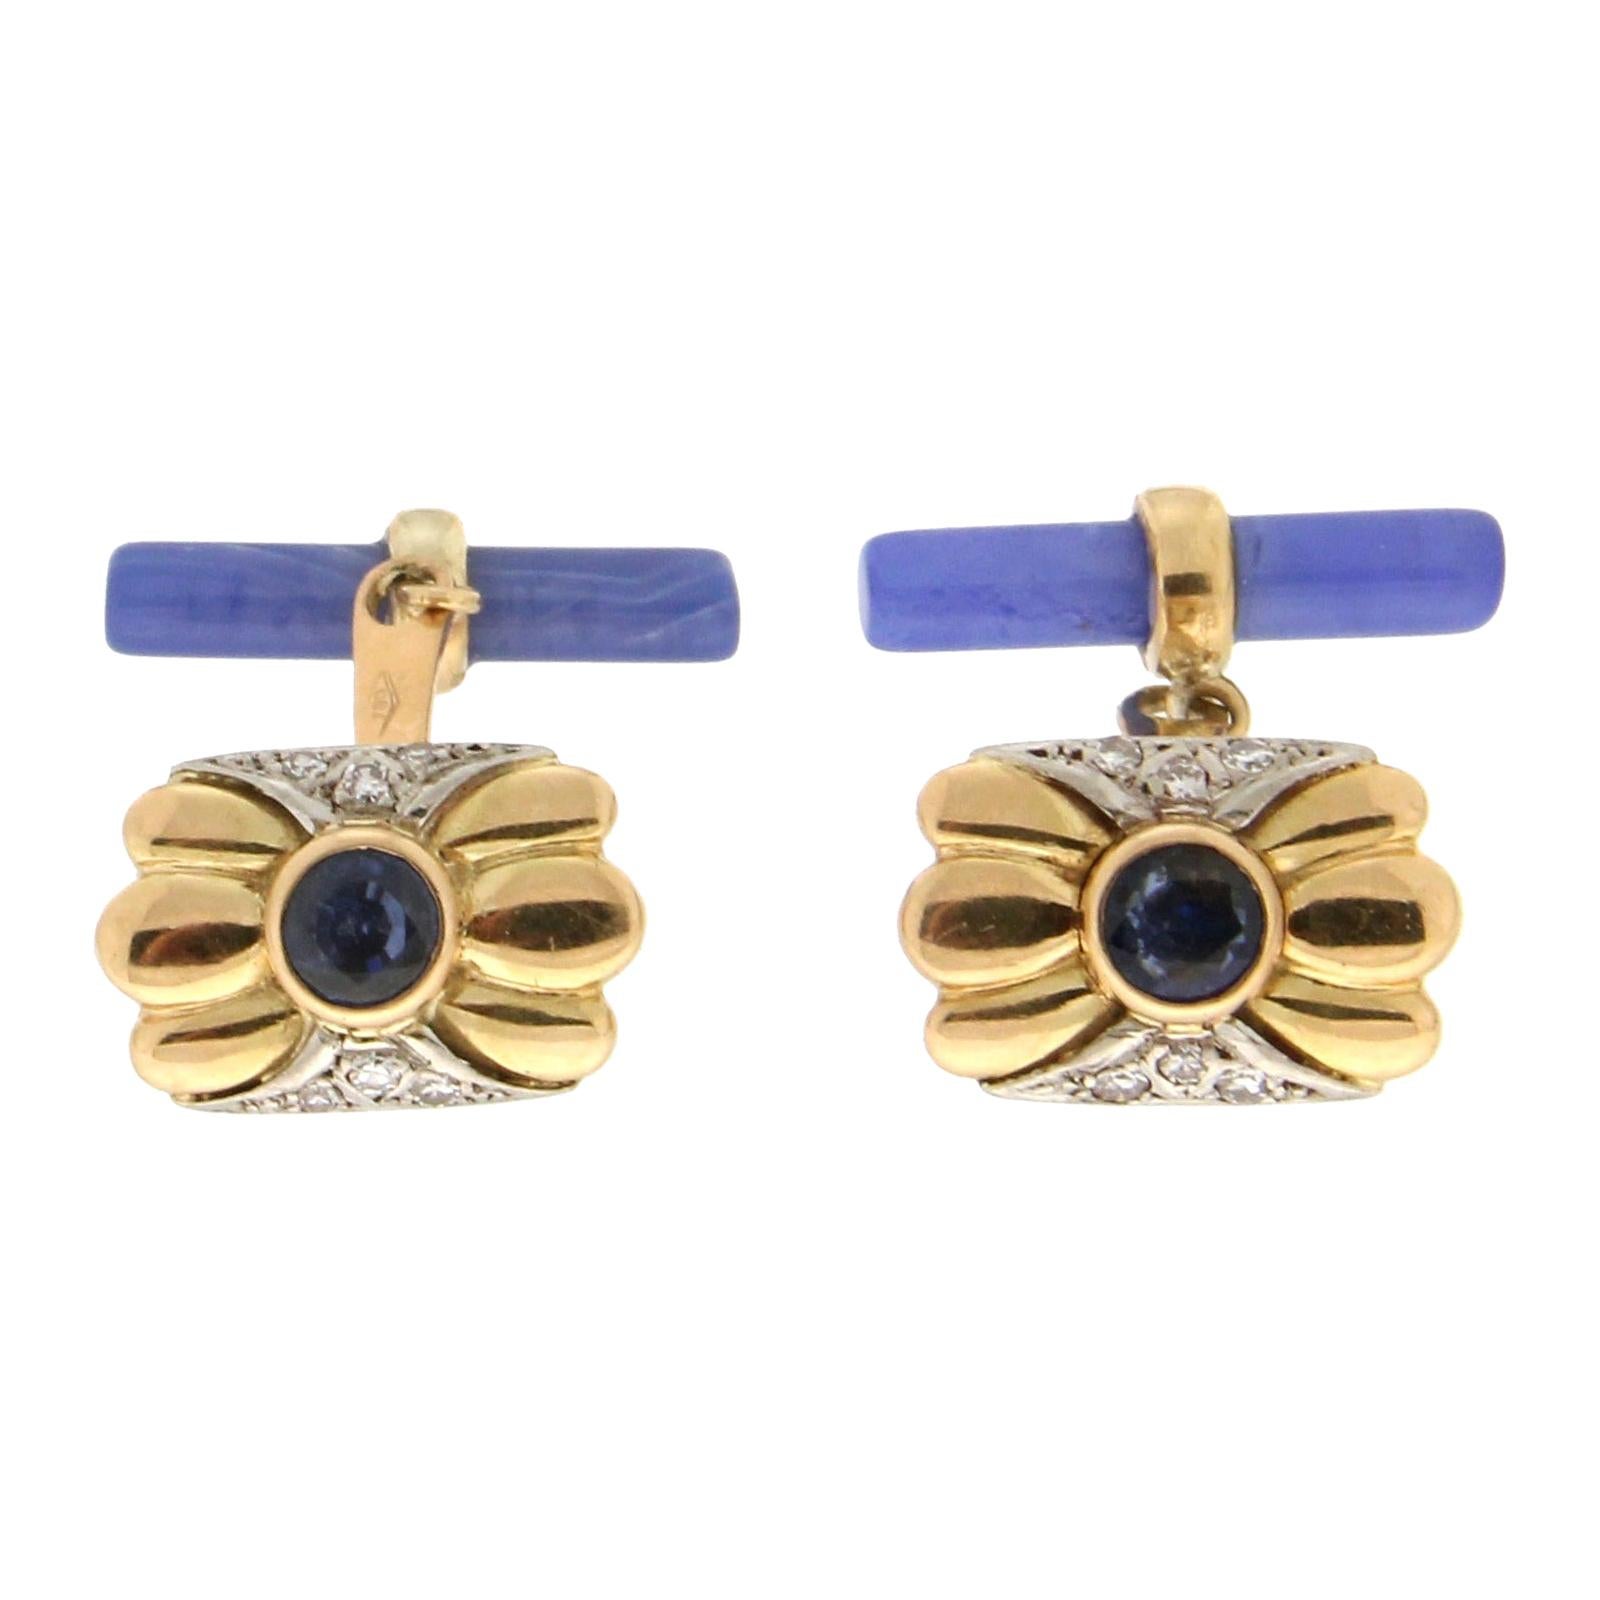 Handcraft Sapphires 18 Karat Yellow Gold Diamonds Blue Agate Barrels Cufflinks